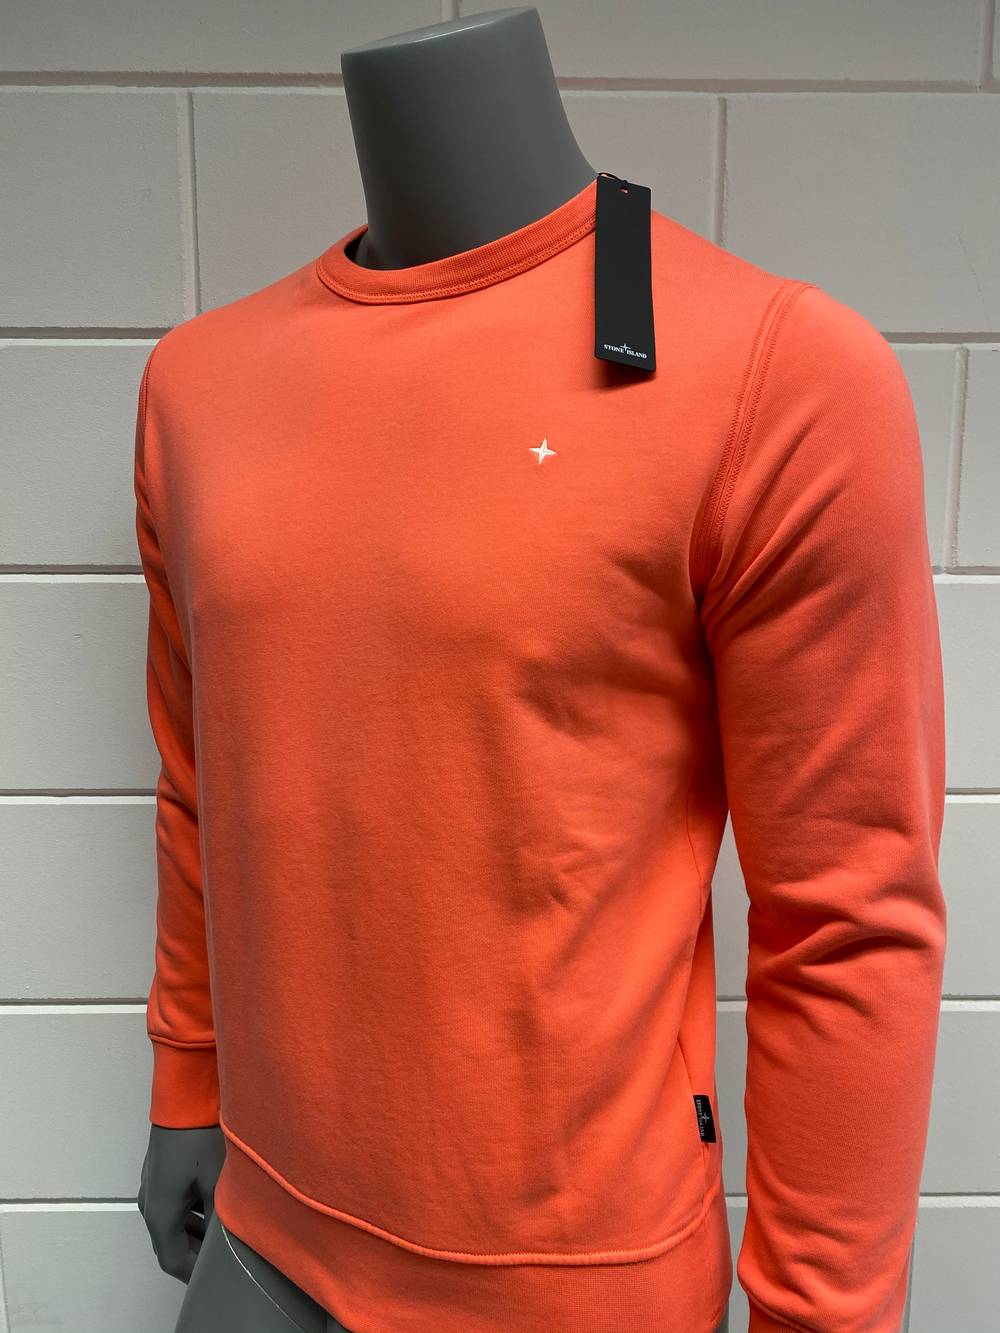 Oppervlakte veld Wacht even Stone Island sweater | Oranje/roze - Top Deals Mode